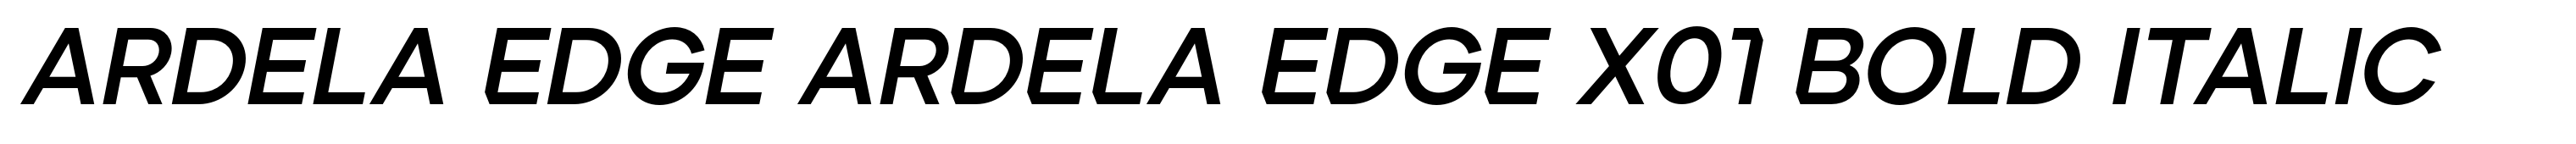 Ardela Edge ARDELA EDGE X01 Bold Italic